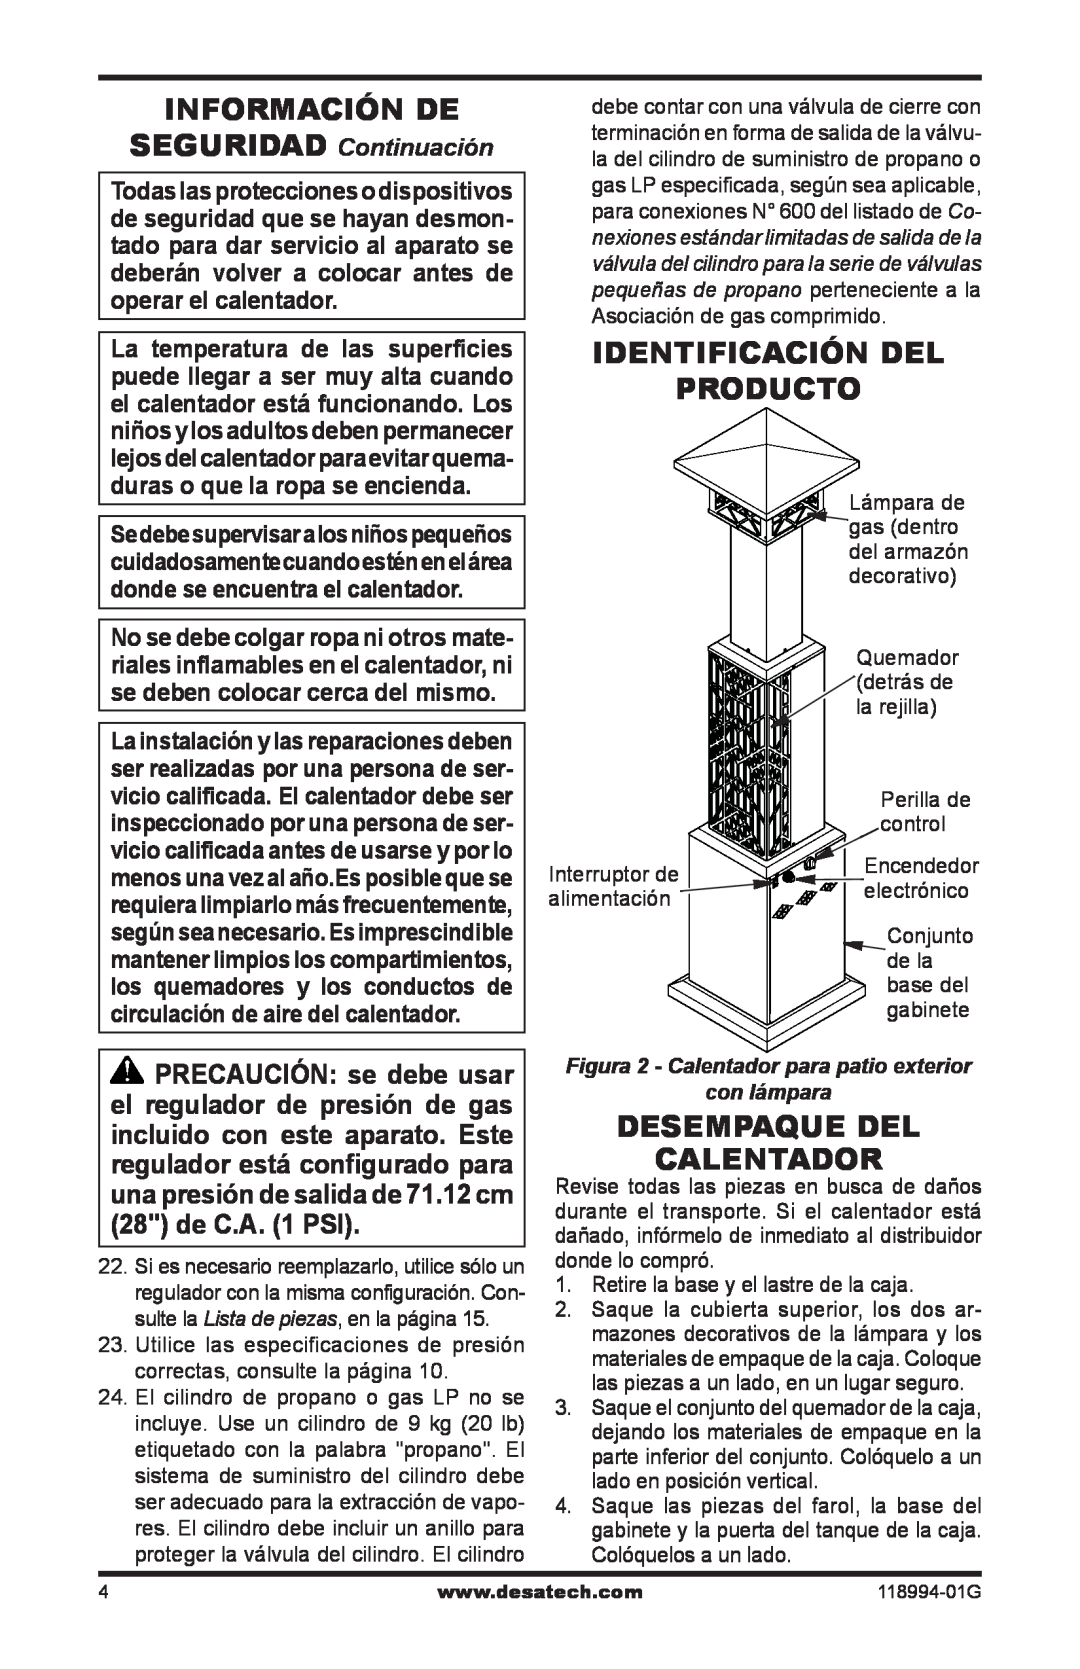 Desa Td104 Información De, Identificación del producto, Desempaque del calentador, SEGURIDAD Continuación, con lámpara 